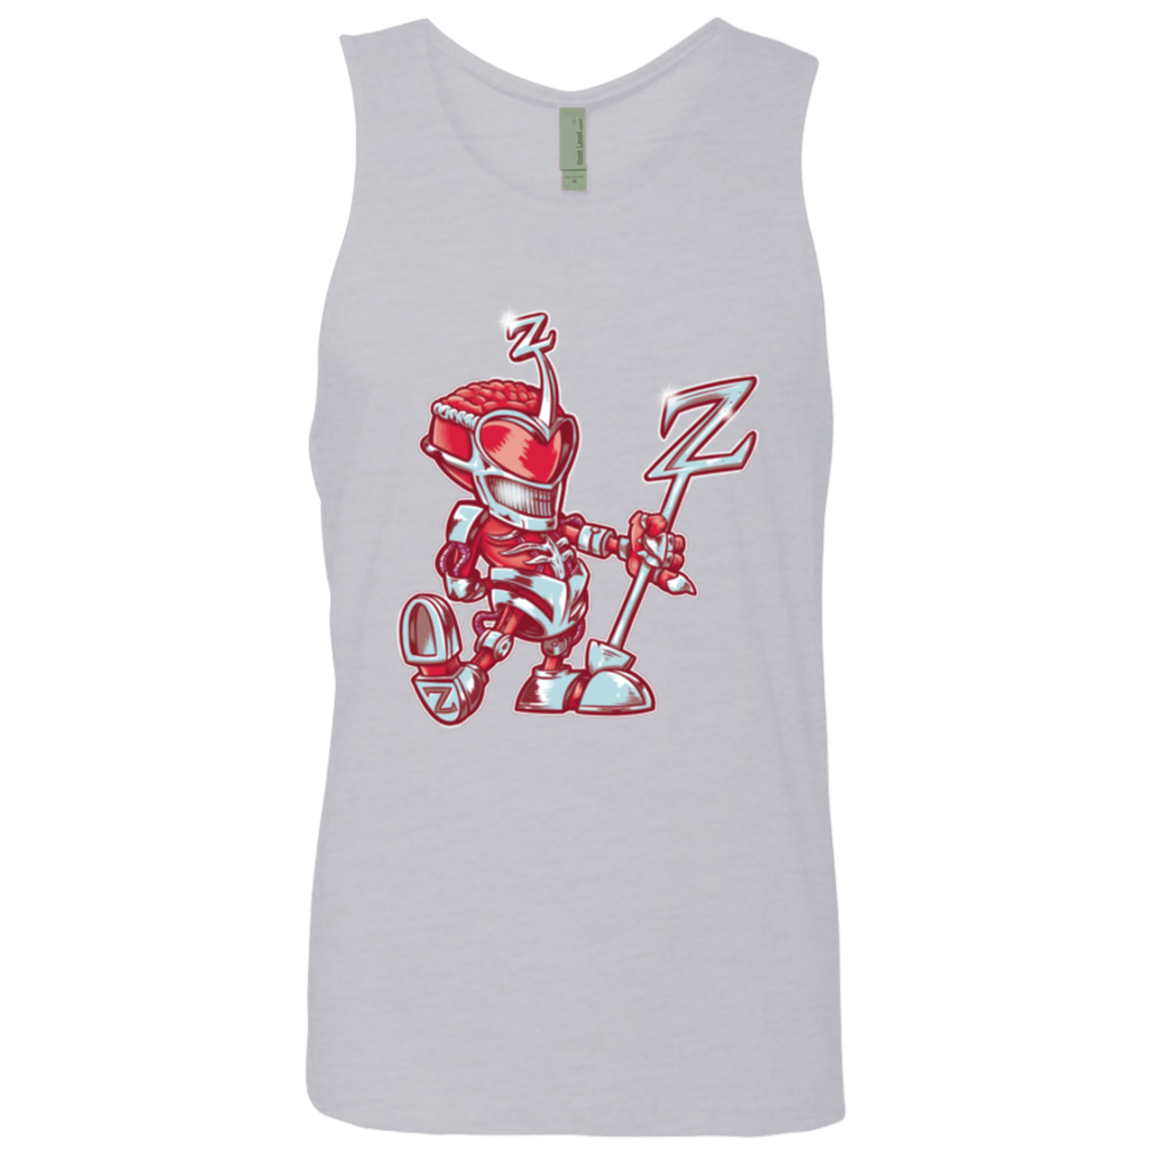 T-Shirts Heather Grey / Small M.O.U.S.Zedd Men's Premium Tank Top